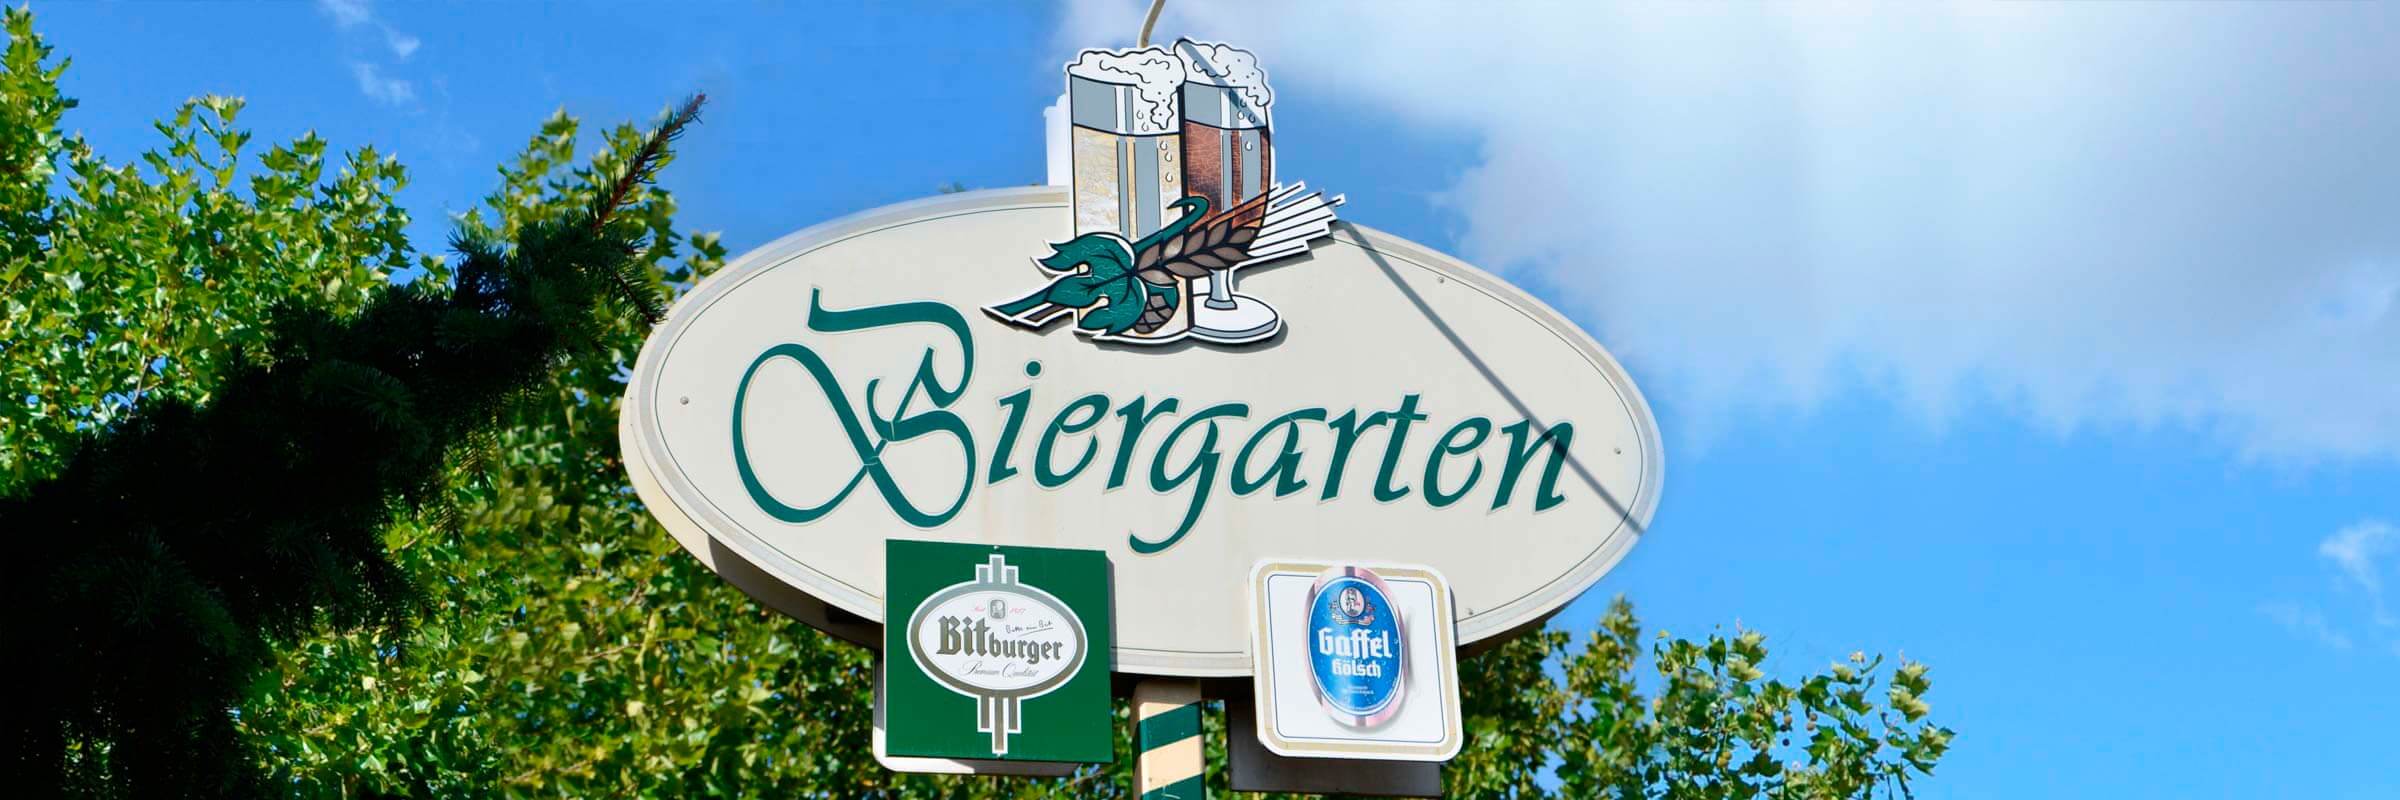 Gasthaus Schweitzer Biergarten